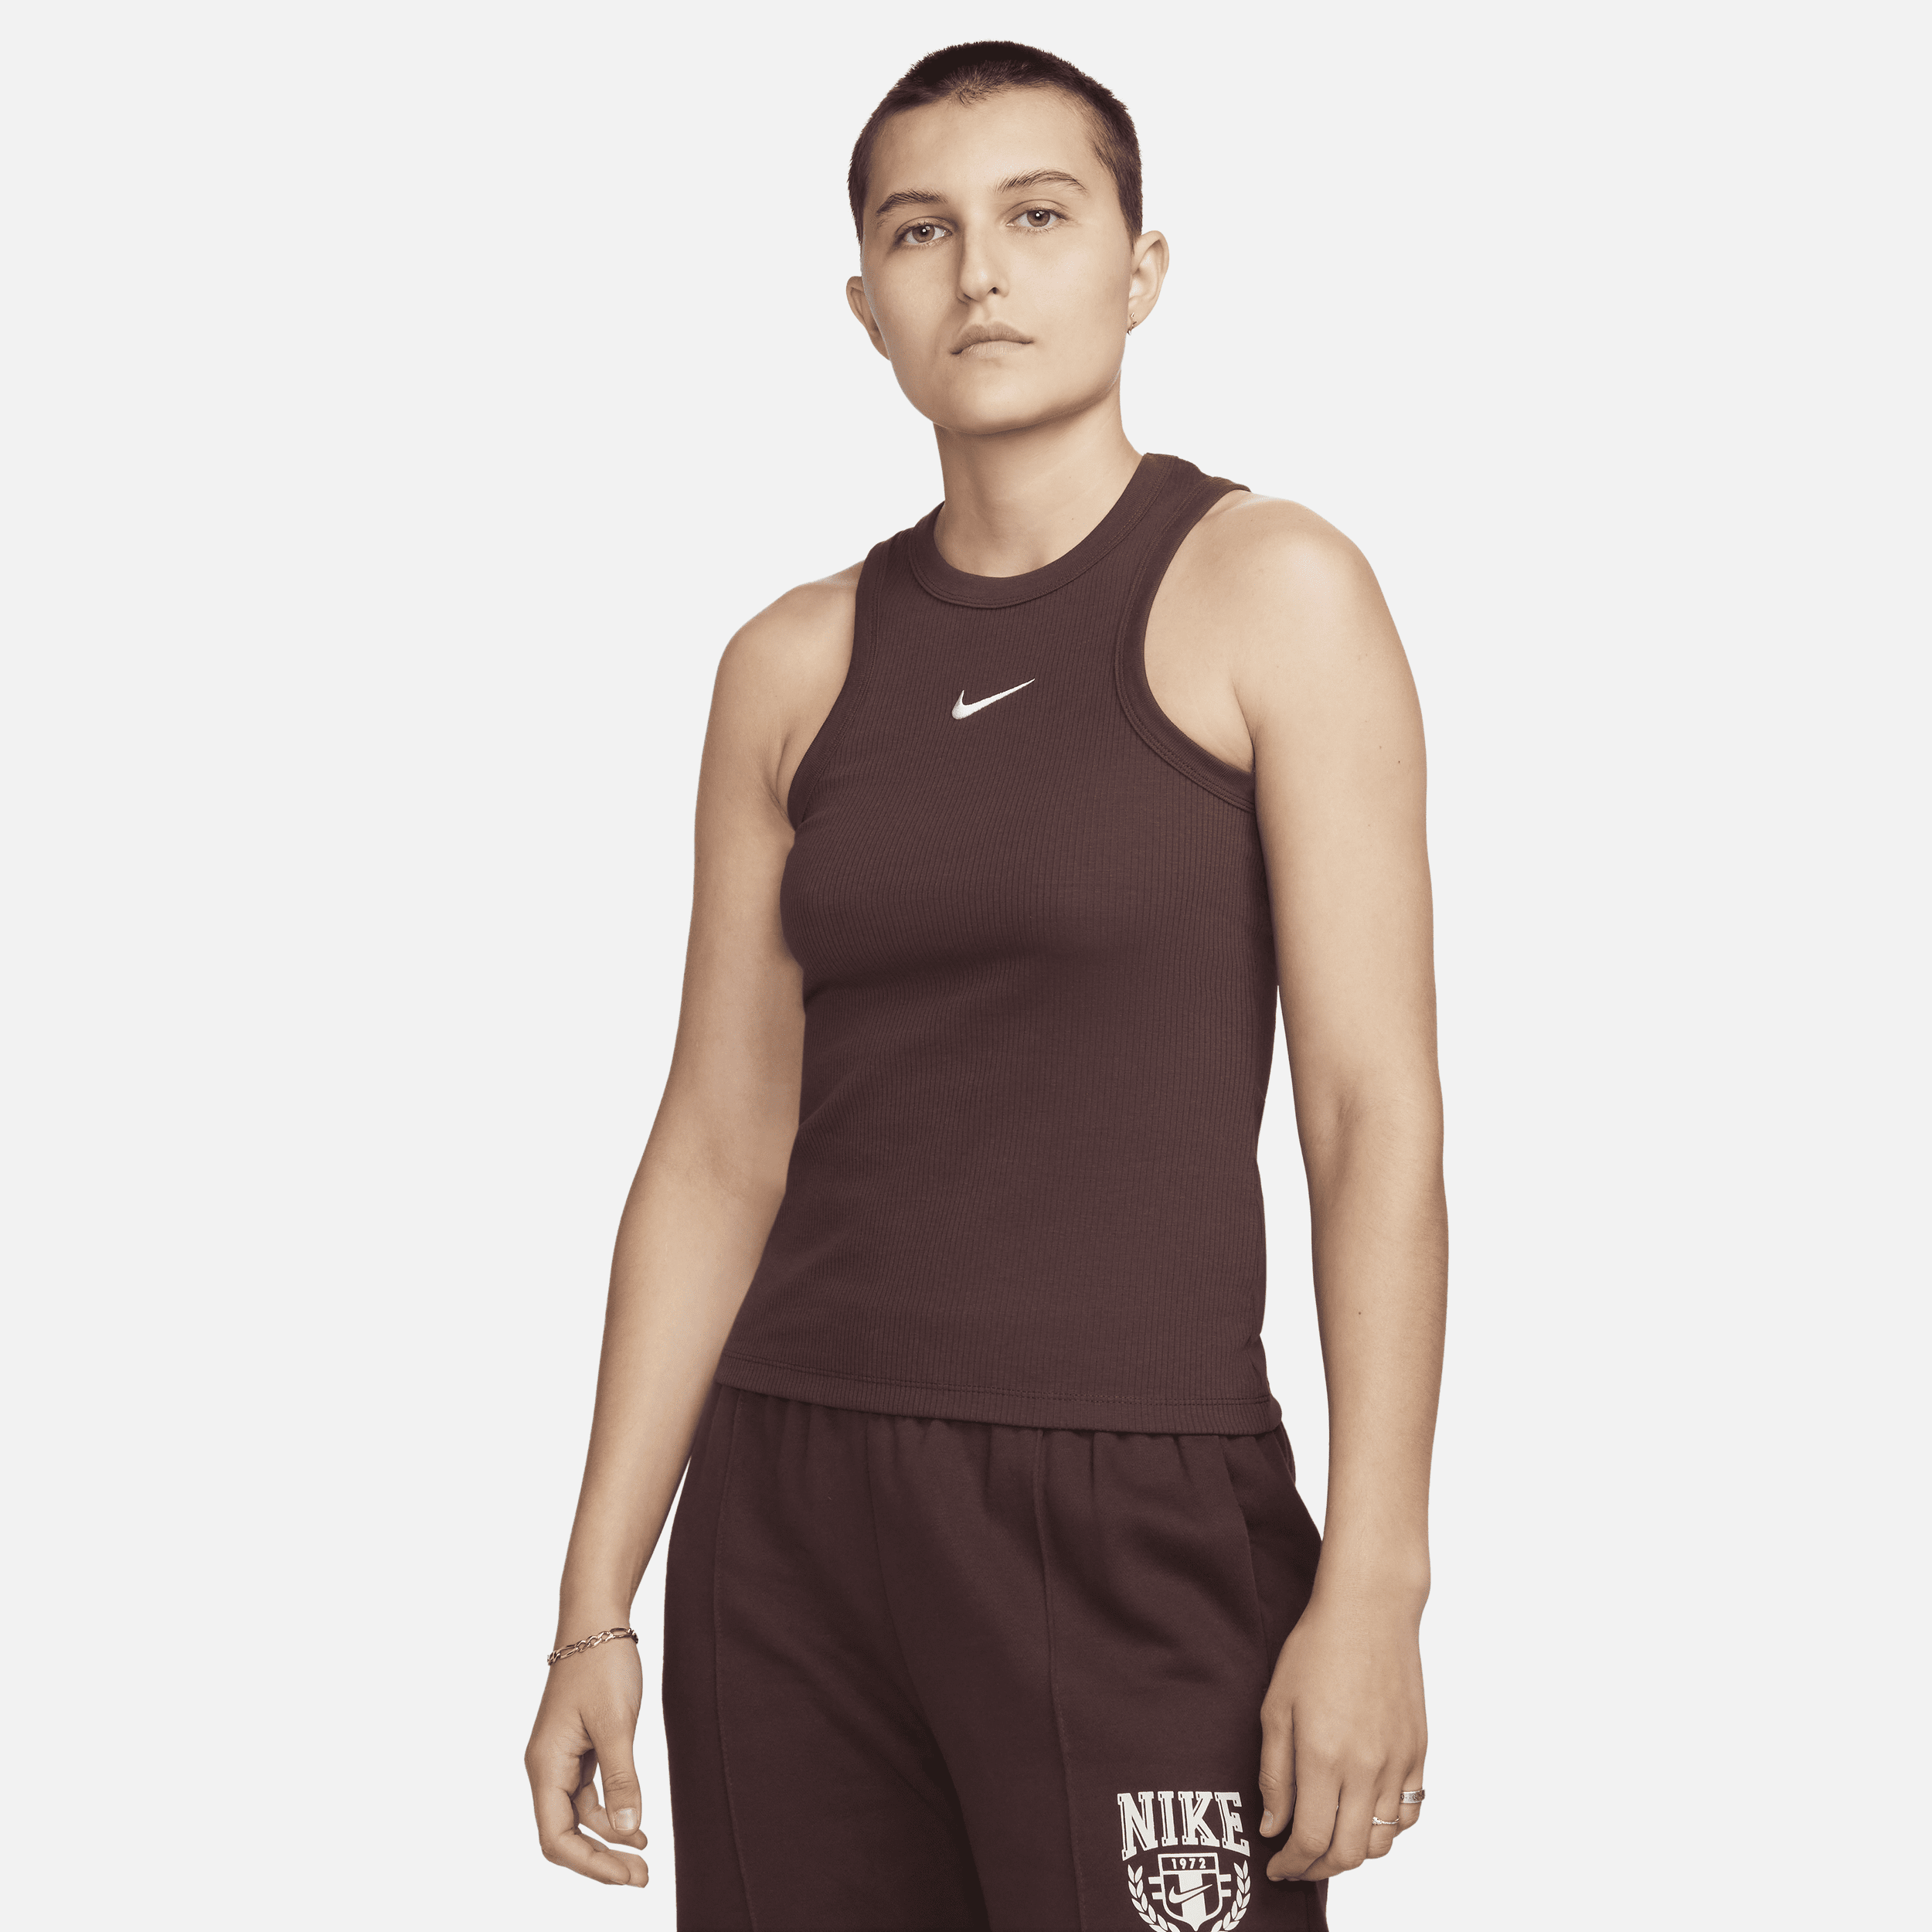 Canotta Nike Sportswear – Donna - Marrone